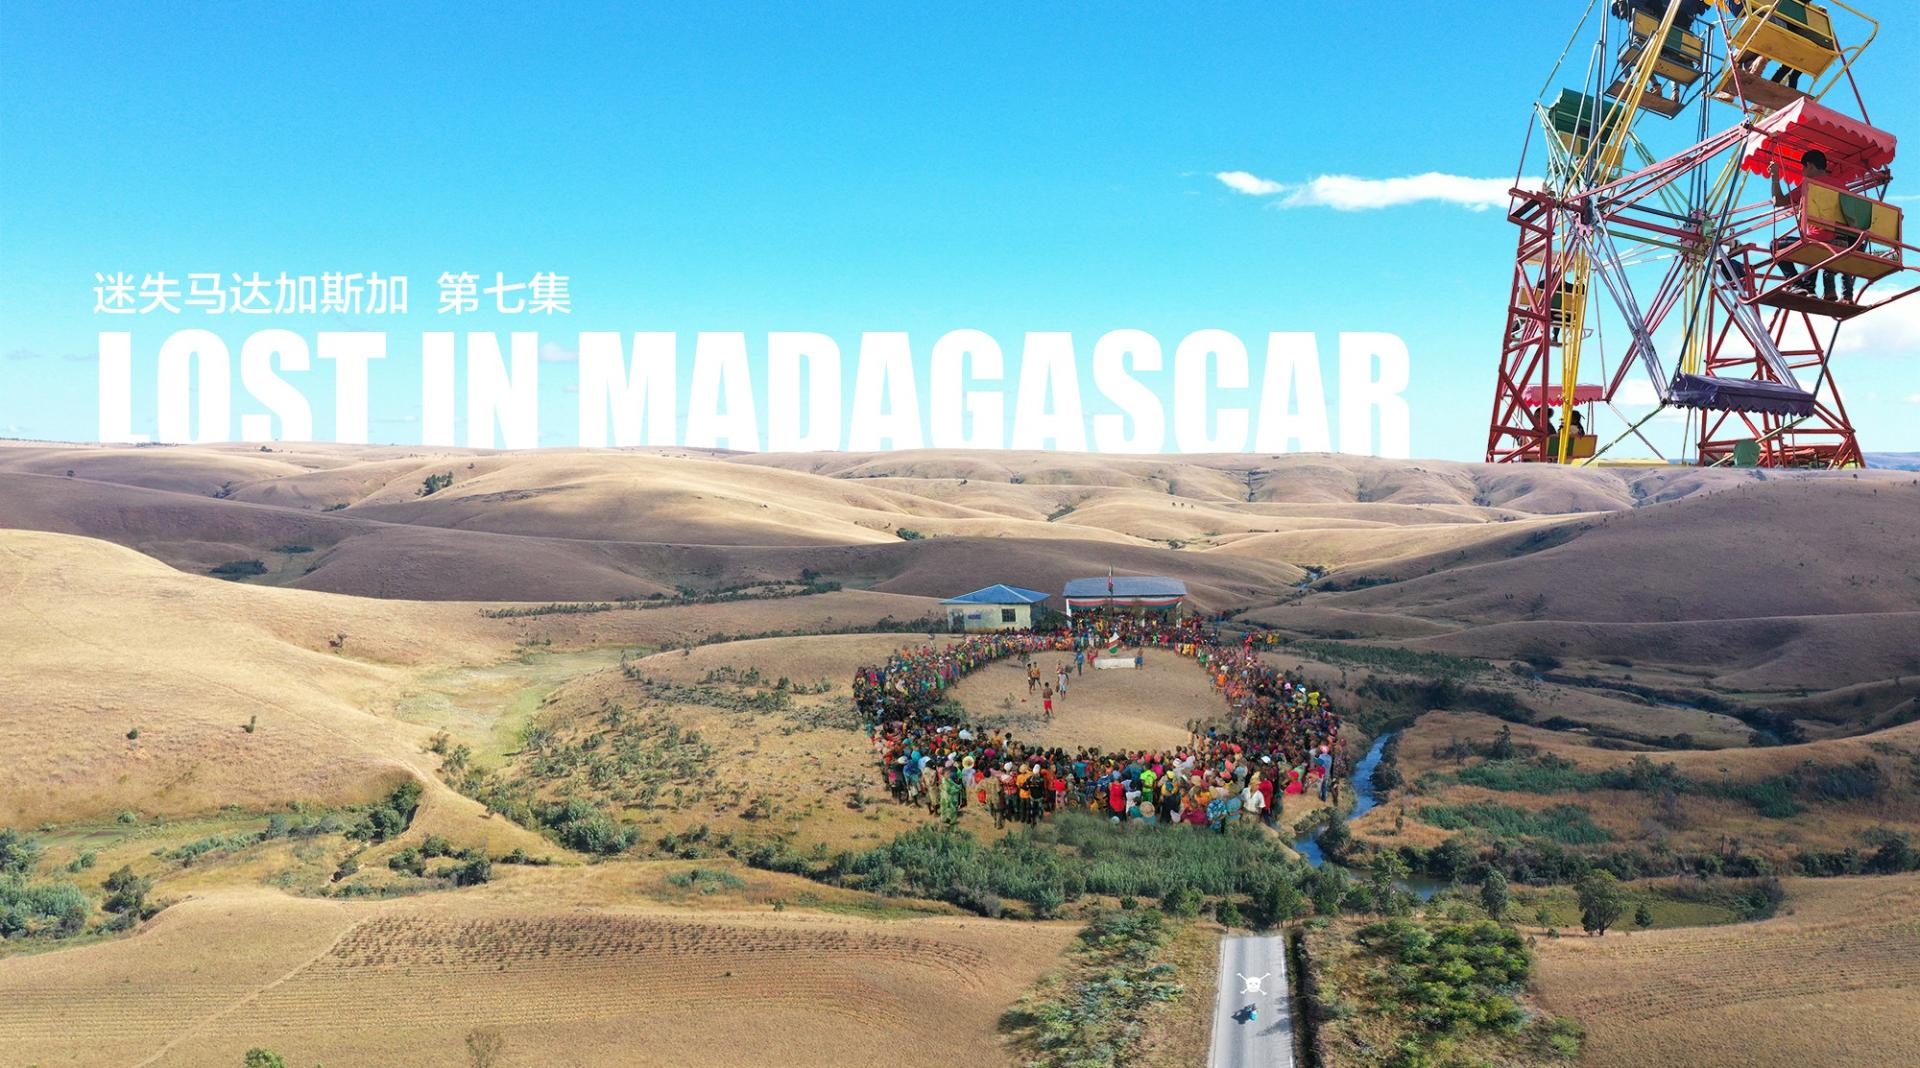 迷失马达加斯加07 (体验马达加斯加全城狂欢、民间散打庆国庆)